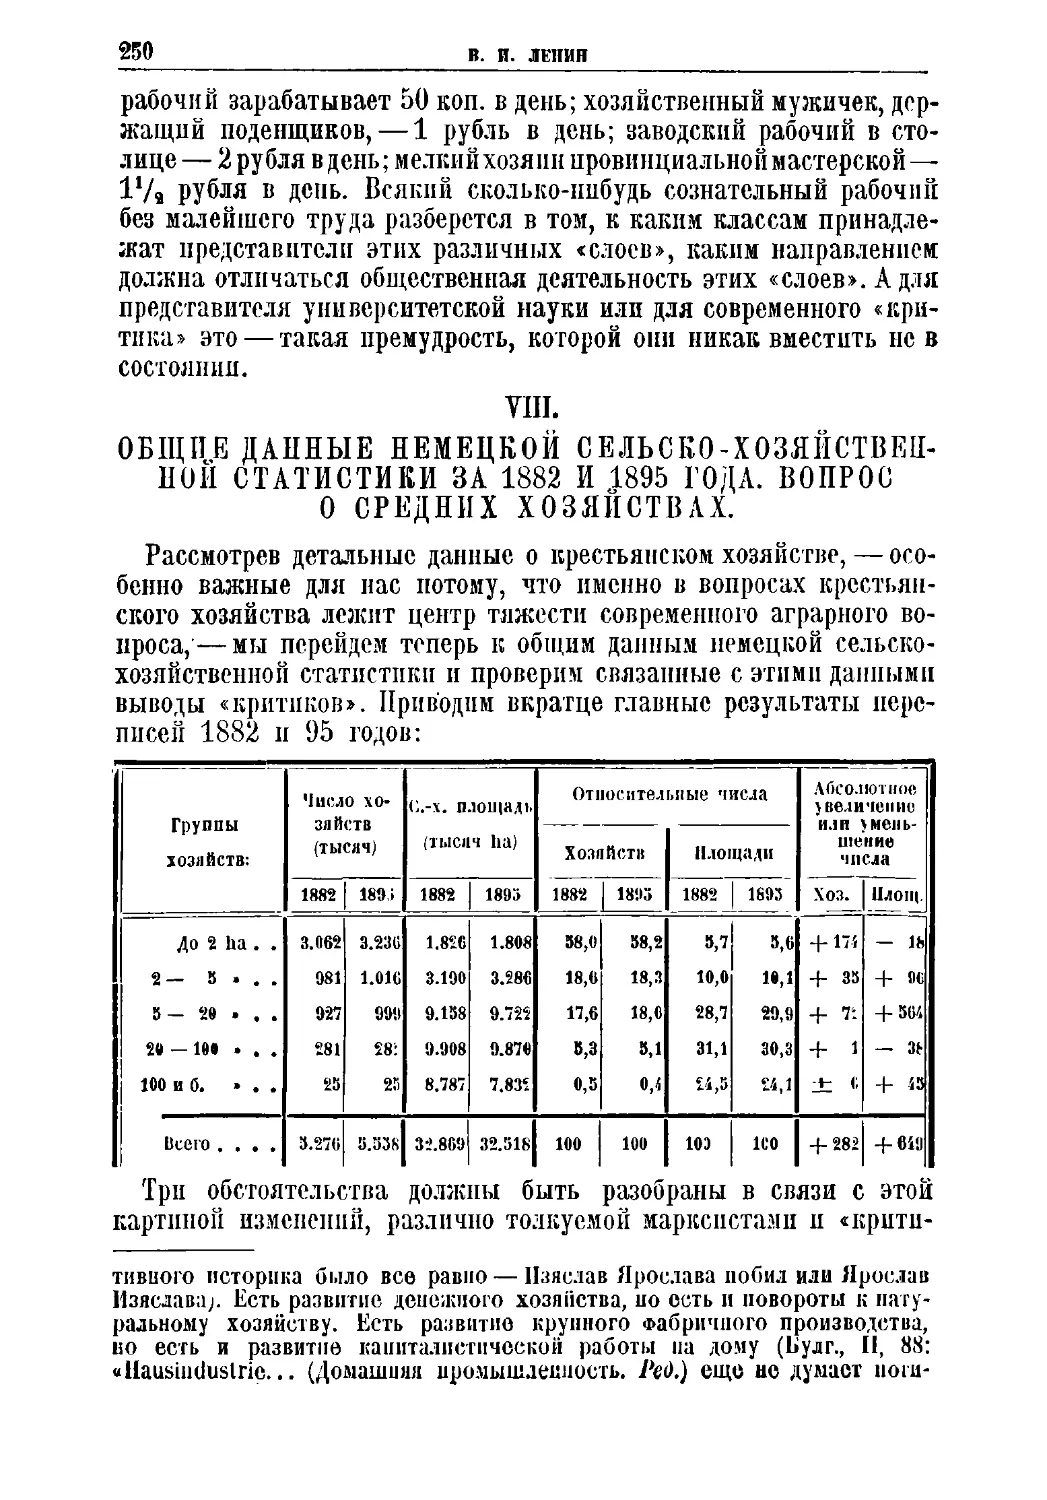 VIII. Общие данные немецкой сельско-хозяйственной статистики за 1882 и 1895 года. Вопрос о средних хозяйствах